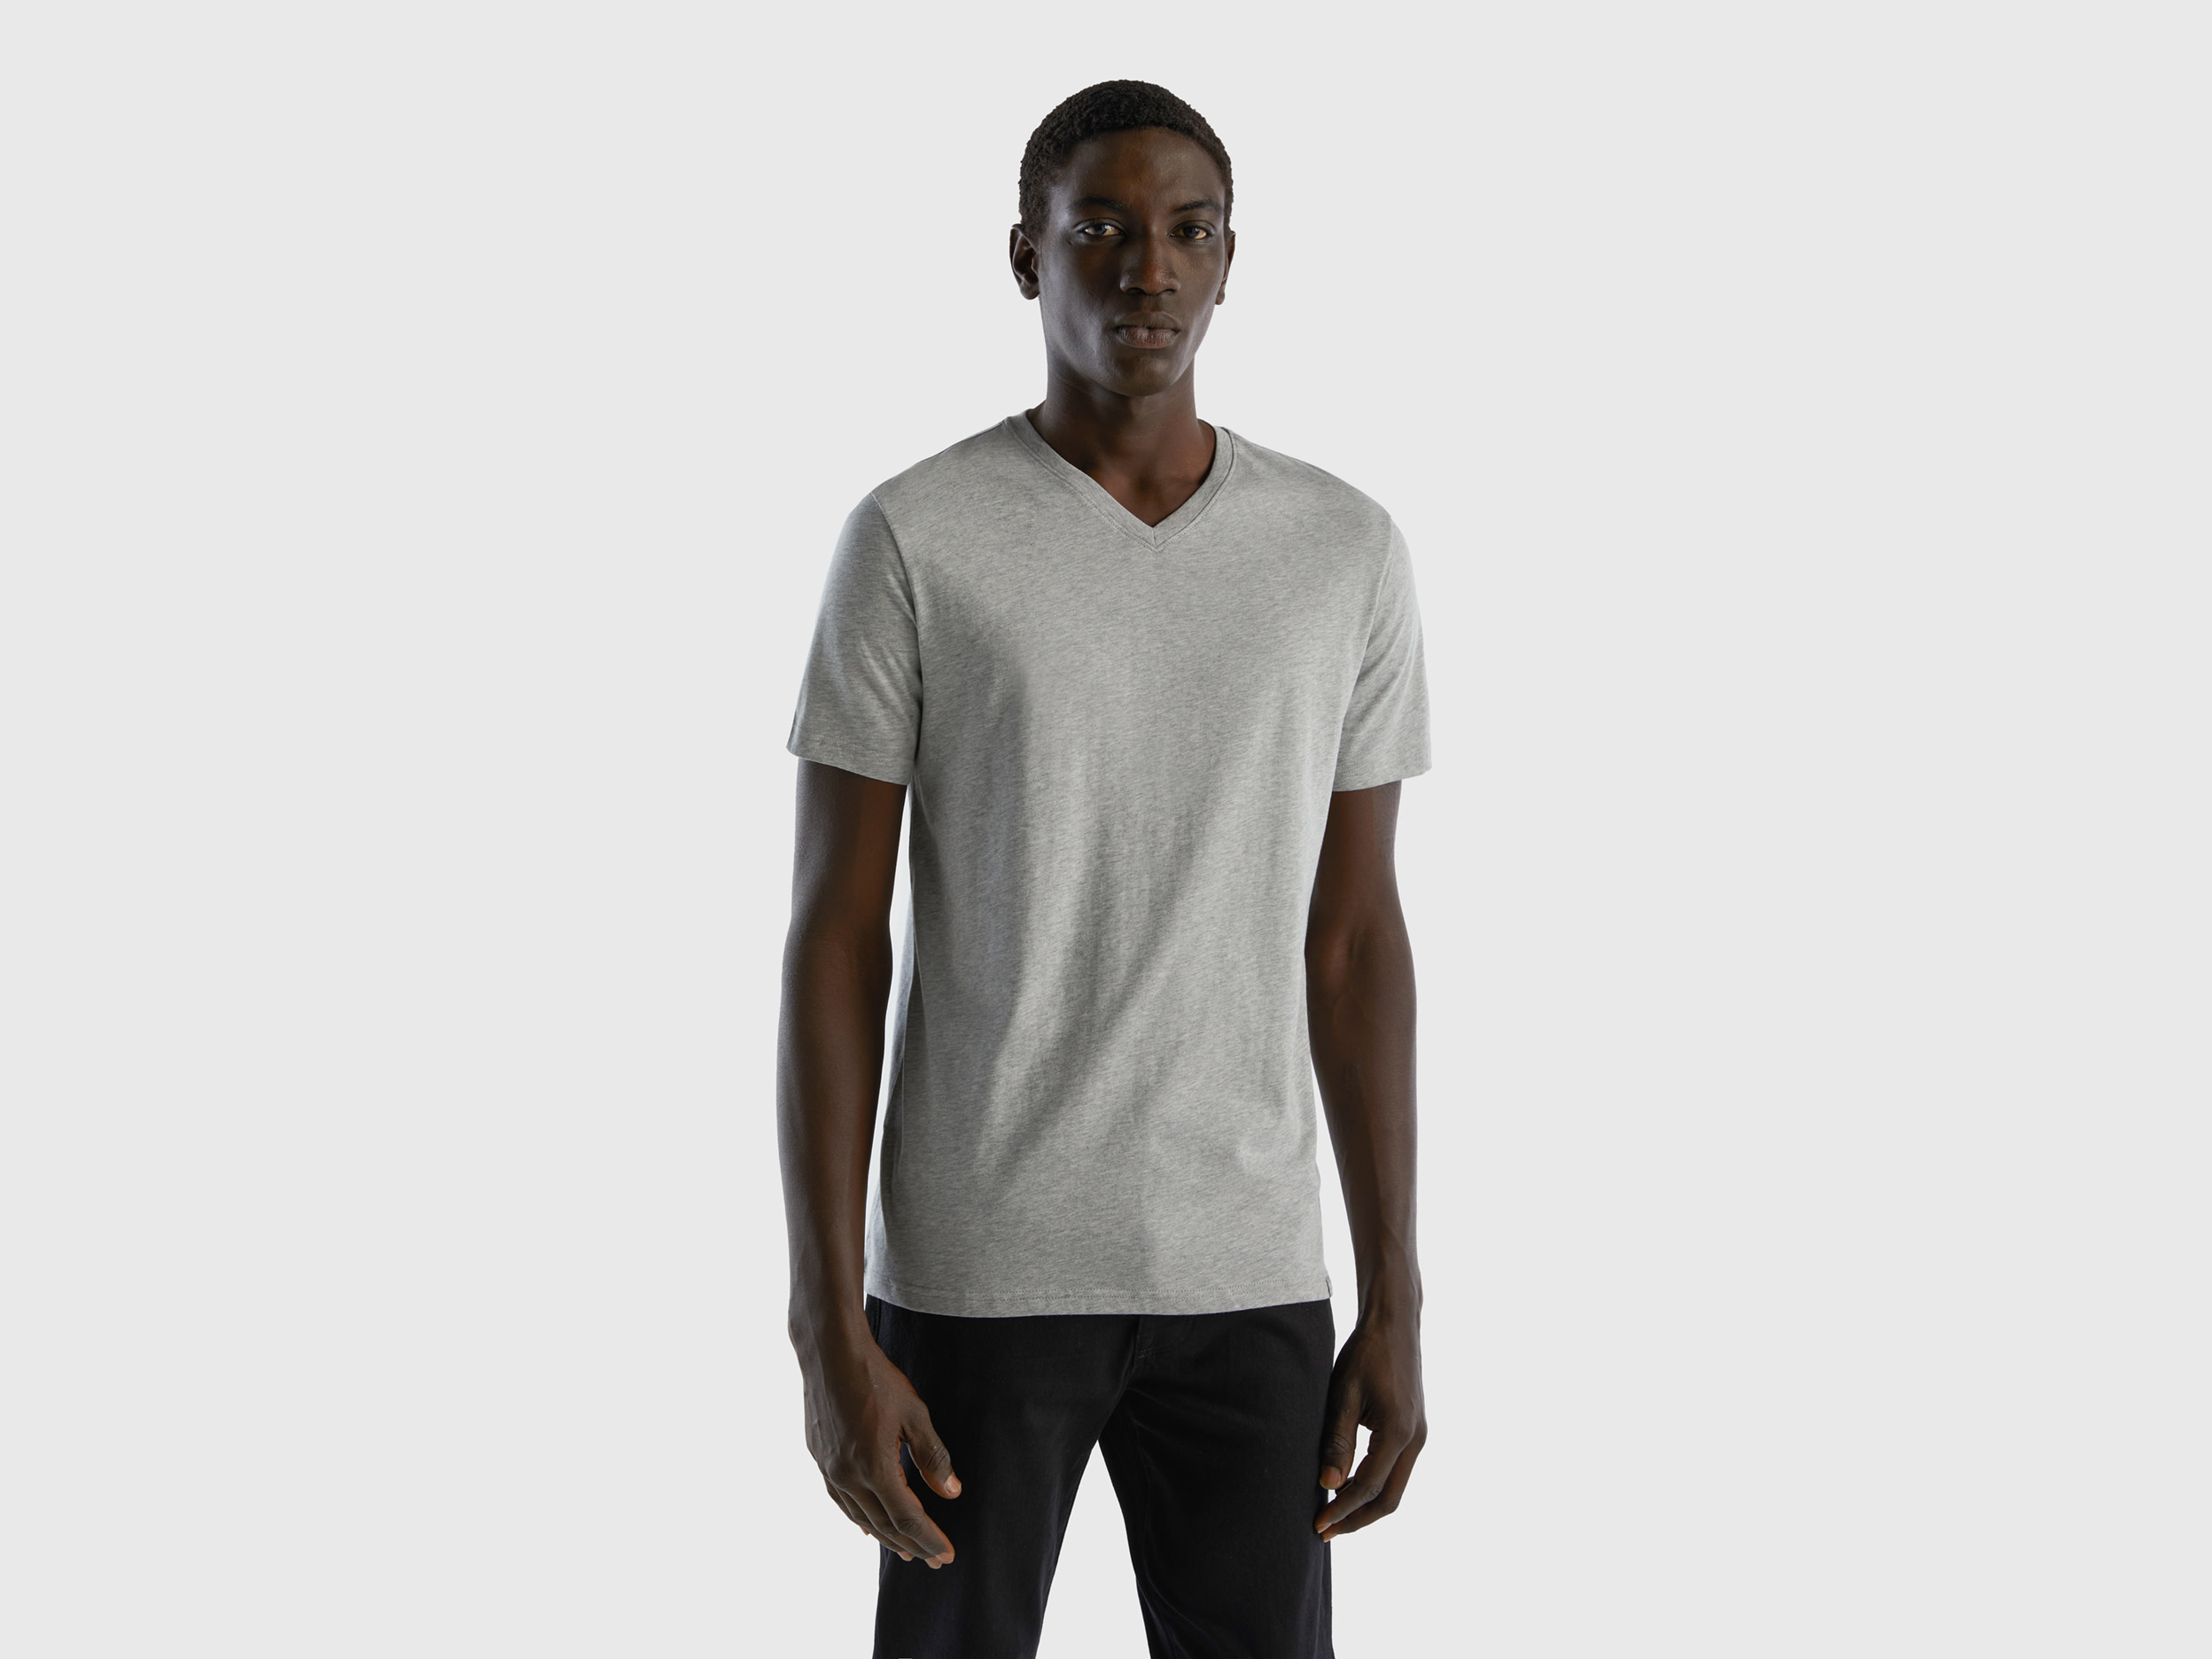 Benetton, T-shirt In Long Fiber Cotton, size XXL, Light Gray, Men